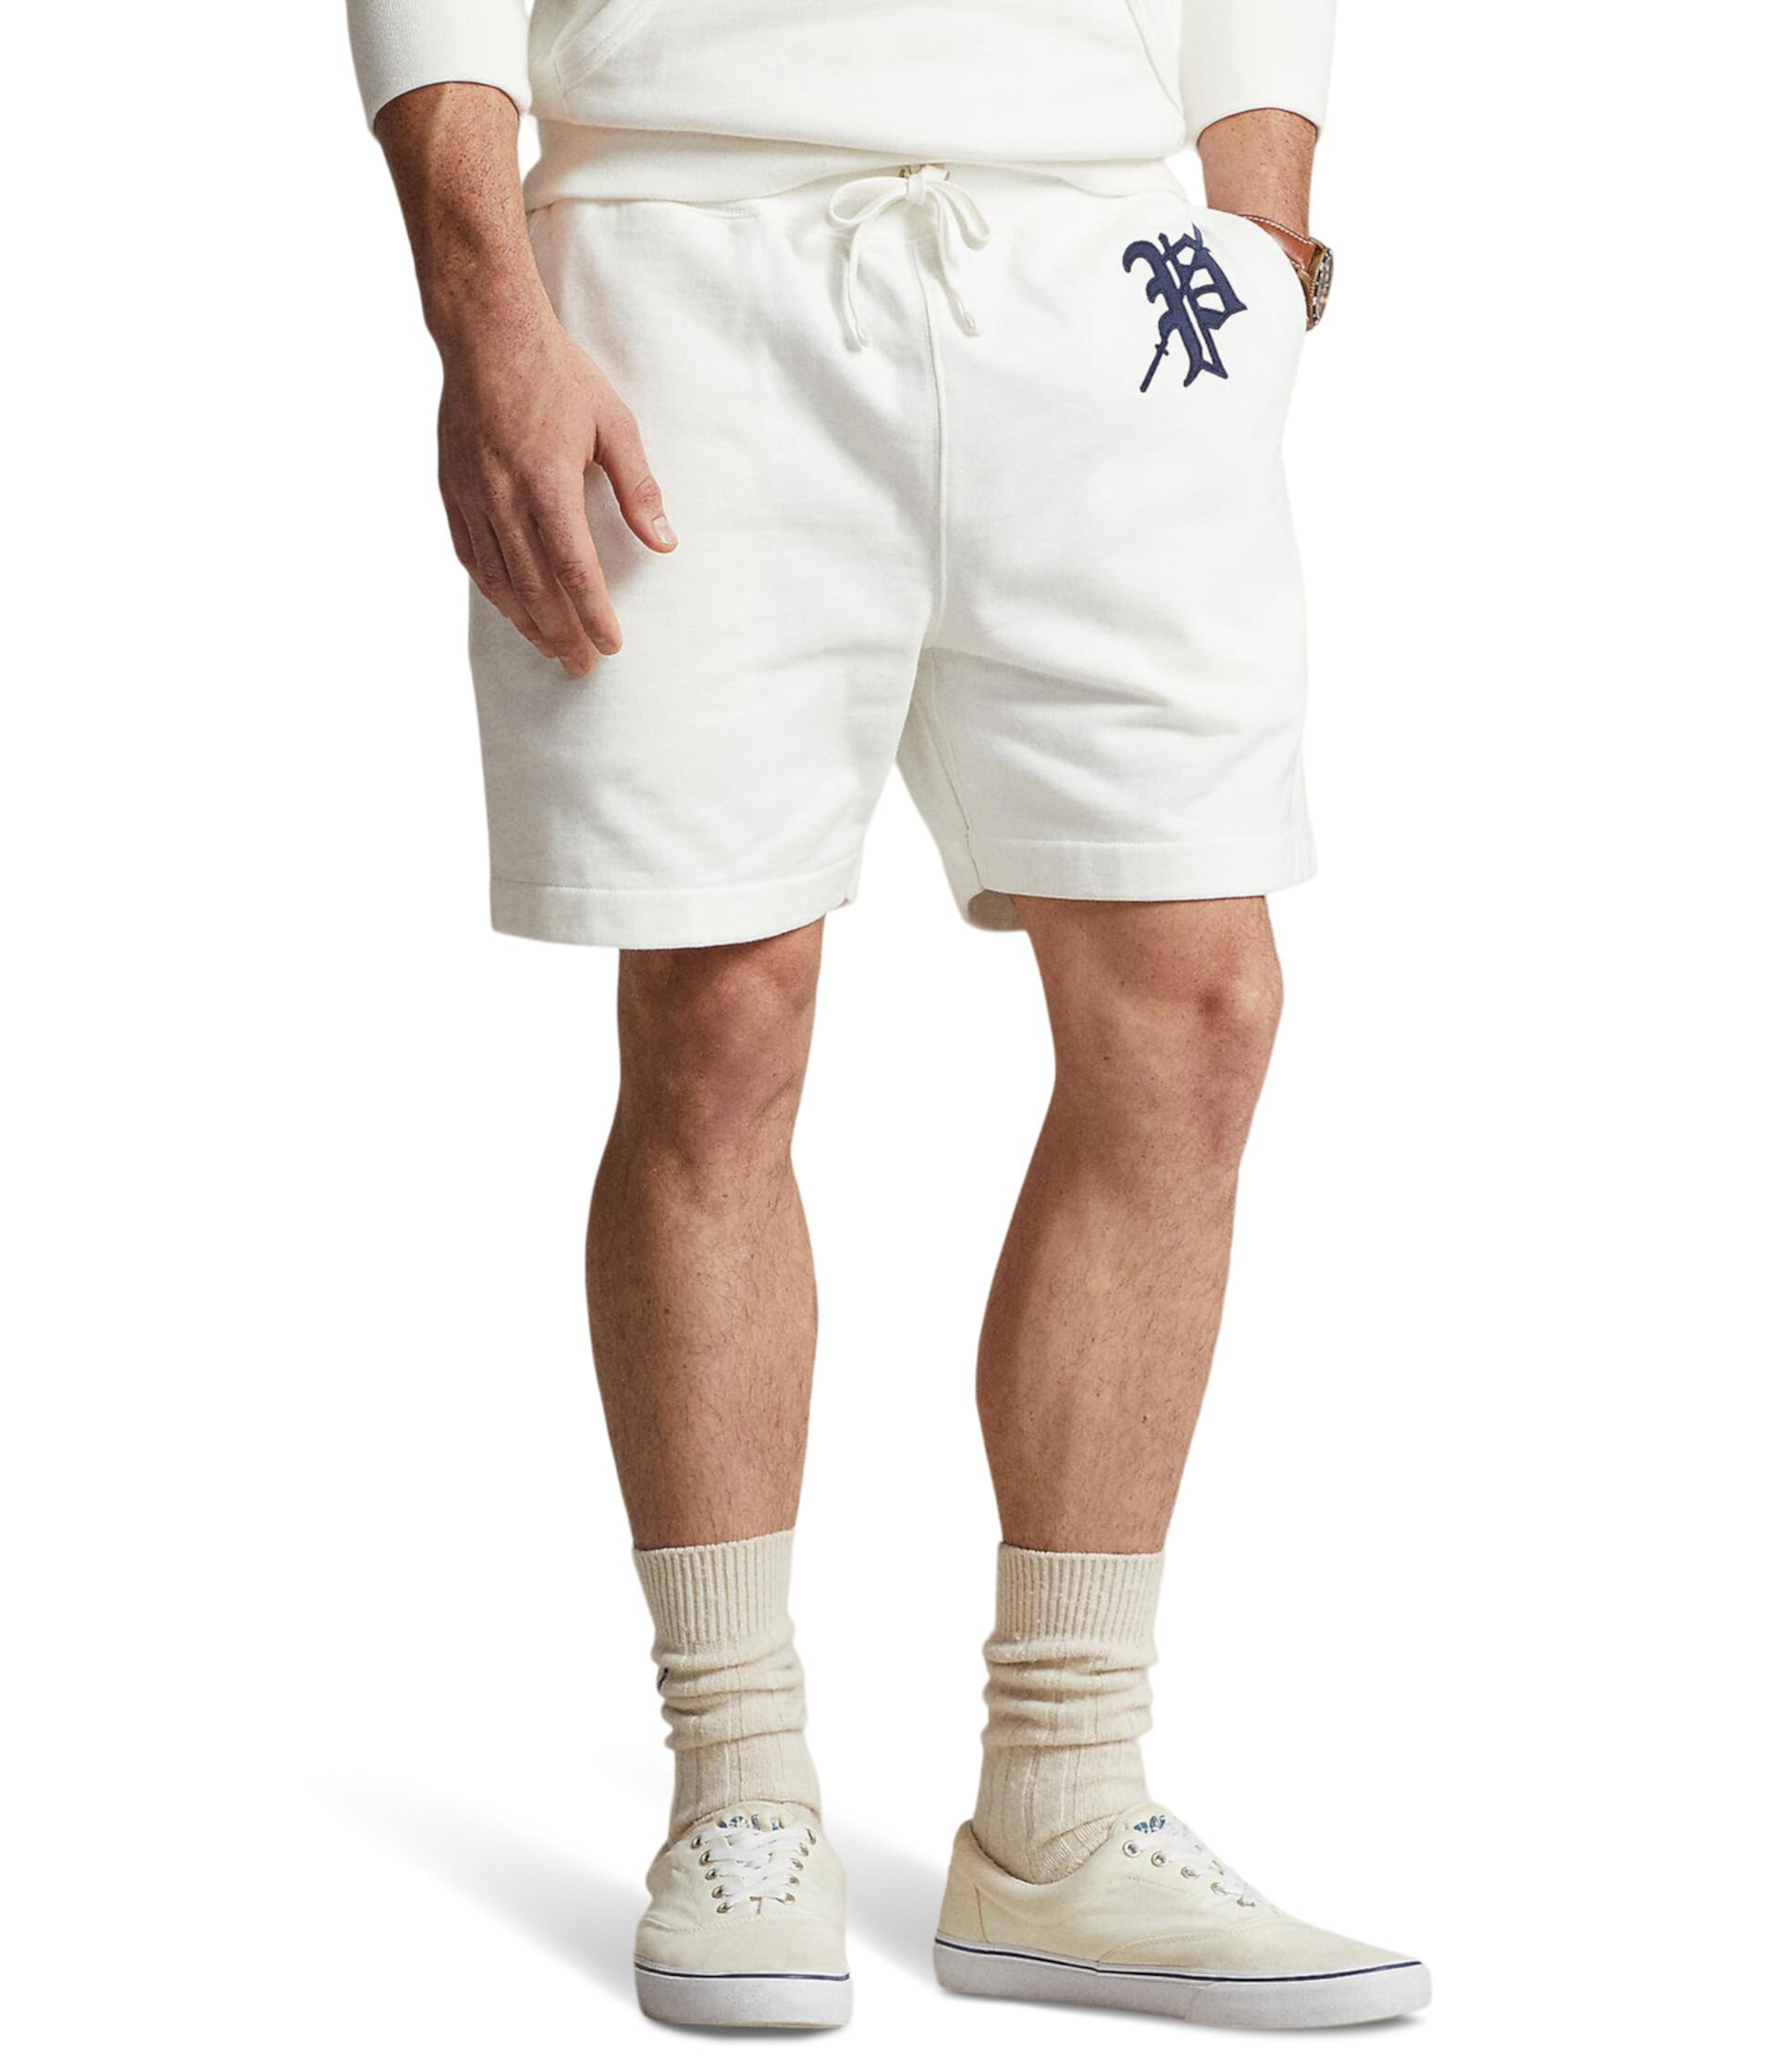 Легкие флисовые шорты с рисунком шириной 6 дюймов Polo Ralph Lauren